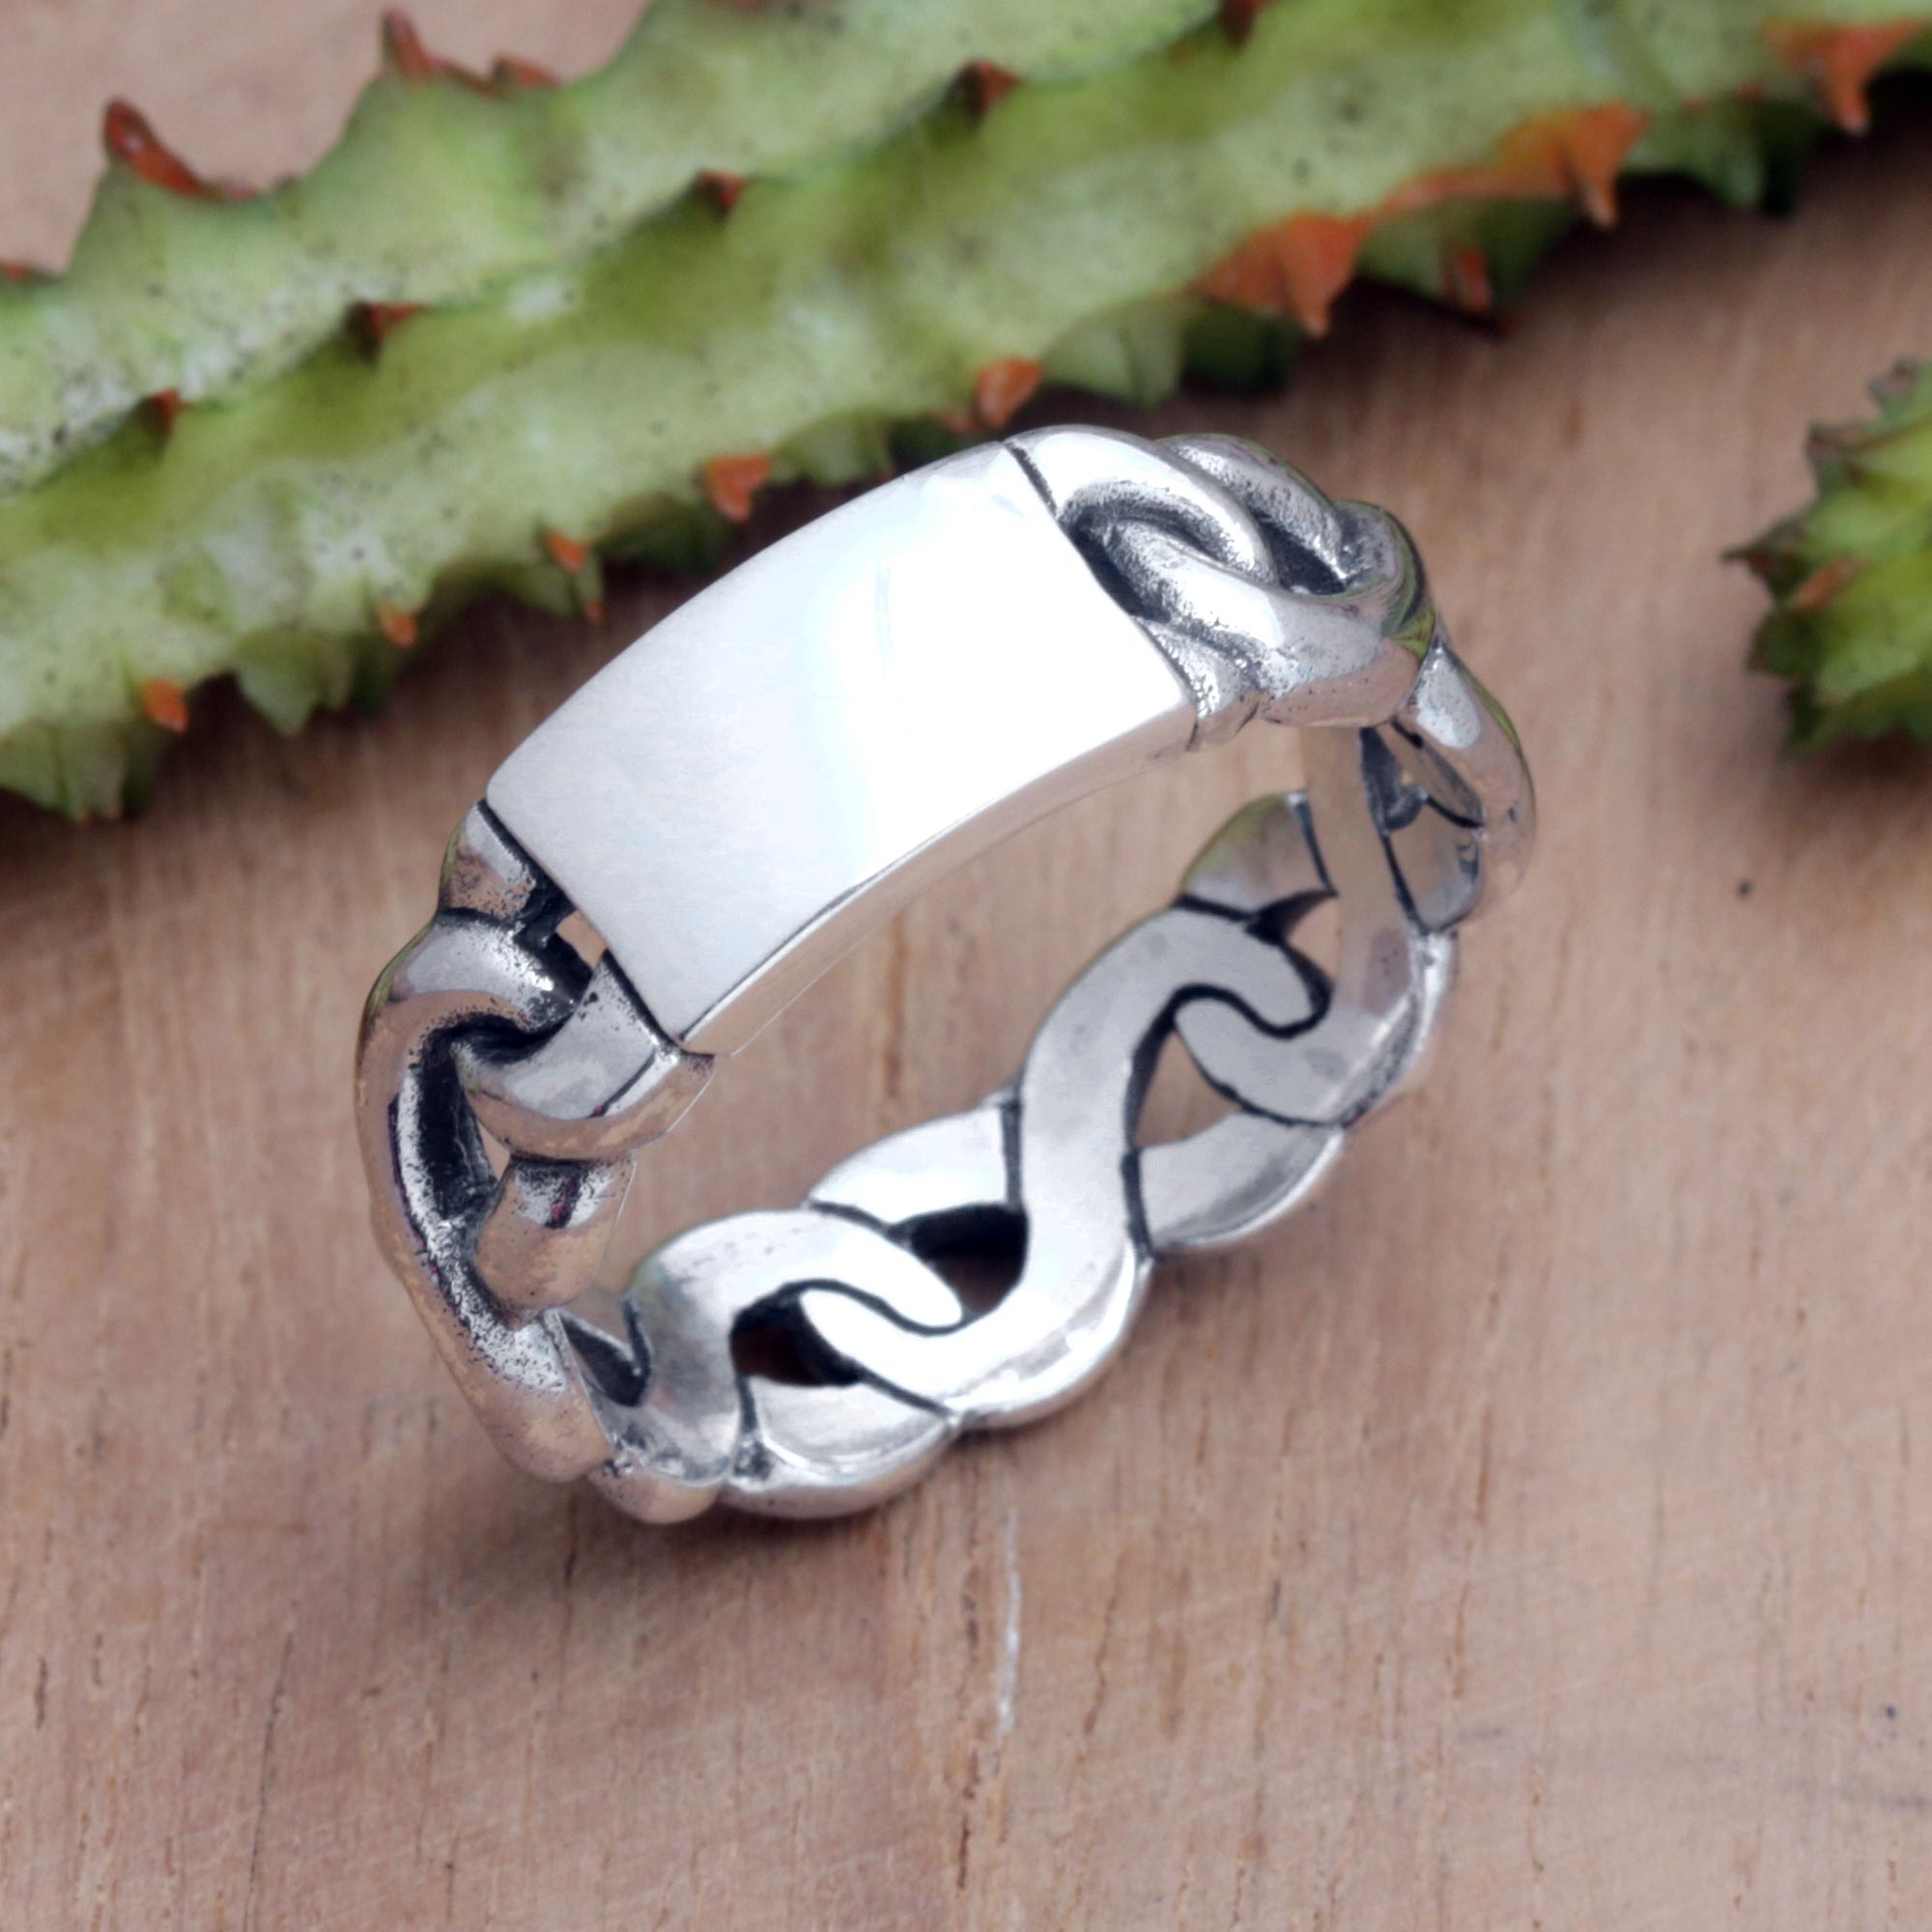 Varieties Square Geometric Metal Stainless Steel Ring for Men/Boys/Biker ( Silver)